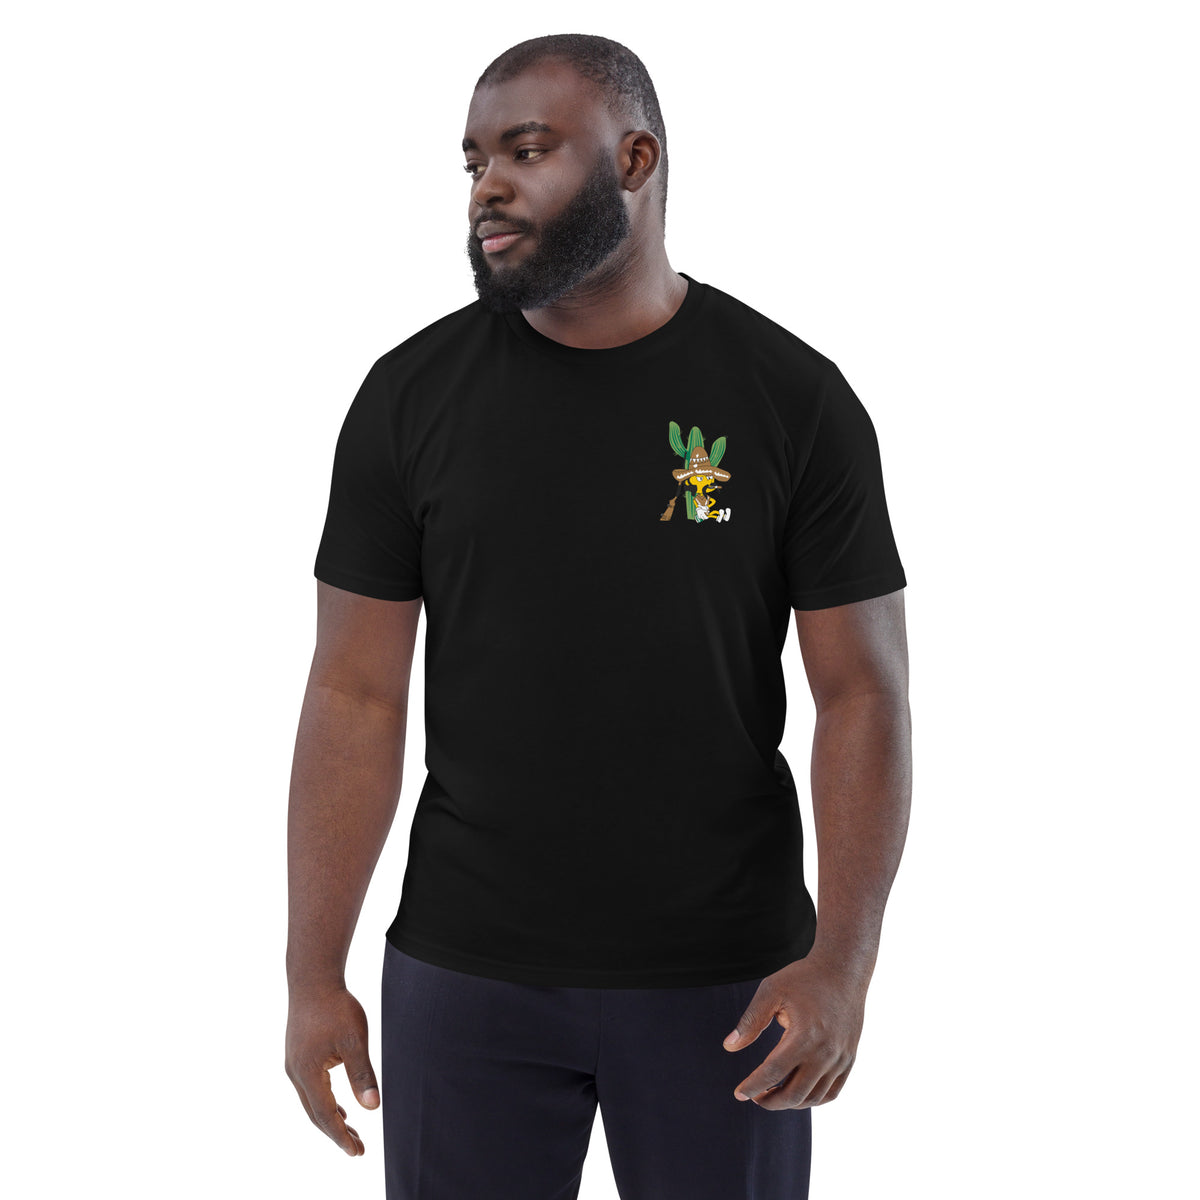 keywalker - Herren-T-Shirt aus Bio-Baumwolle mit Stick